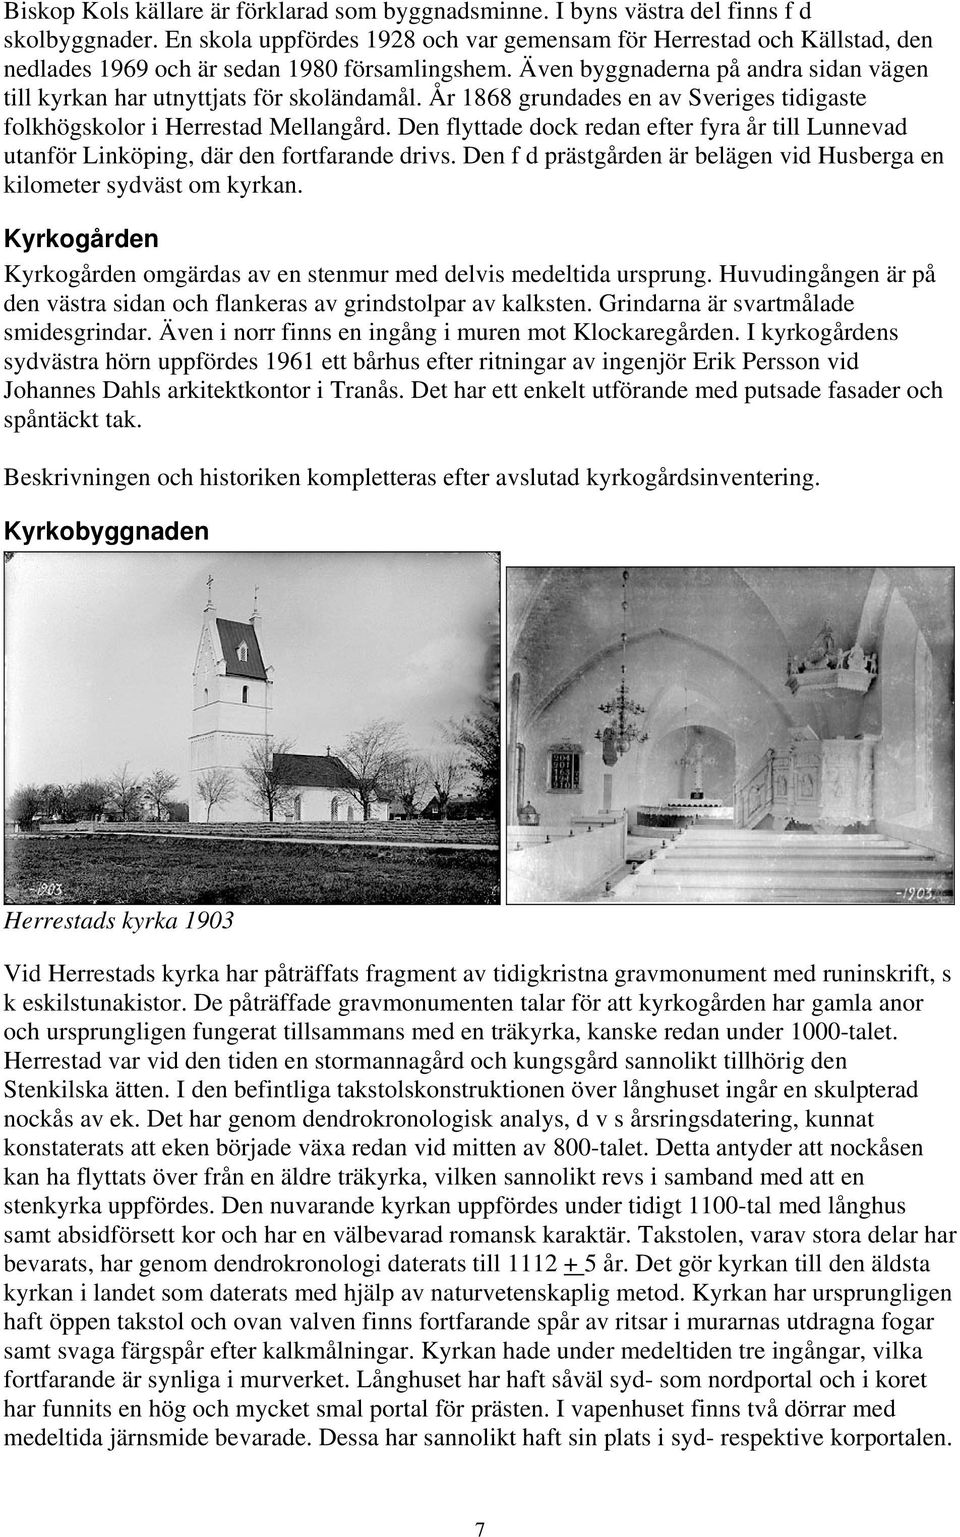 Även byggnaderna på andra sidan vägen till kyrkan har utnyttjats för skoländamål. År 1868 grundades en av Sveriges tidigaste folkhögskolor i Herrestad Mellangård.